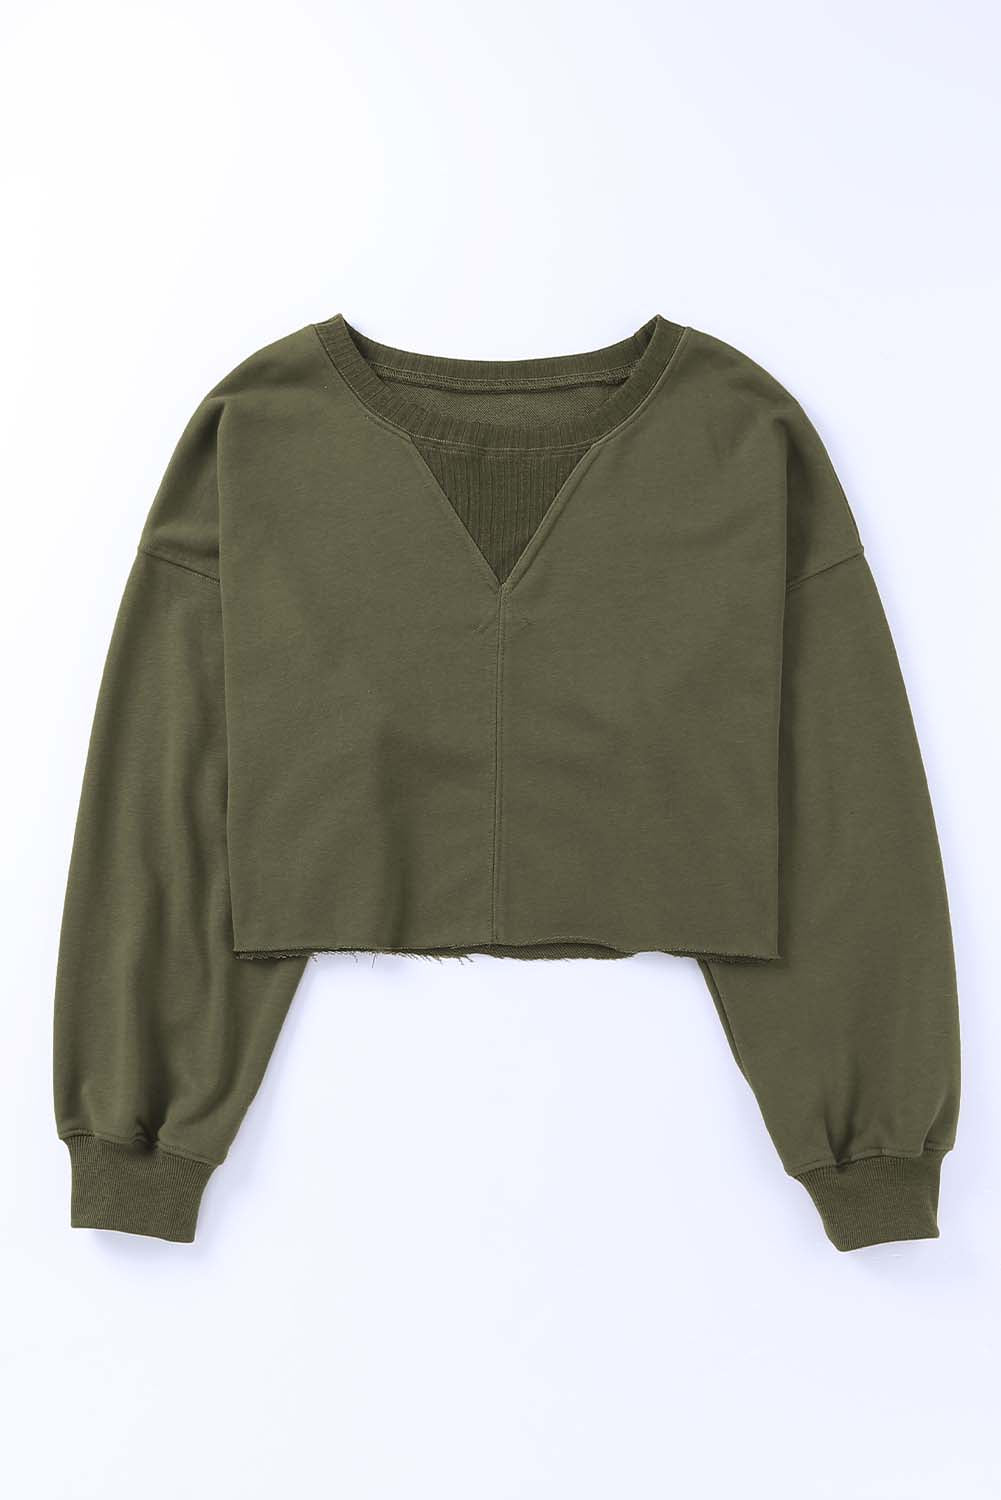 Grünes, kurzes Sweatshirt mit tief angesetzter Schulterpartie